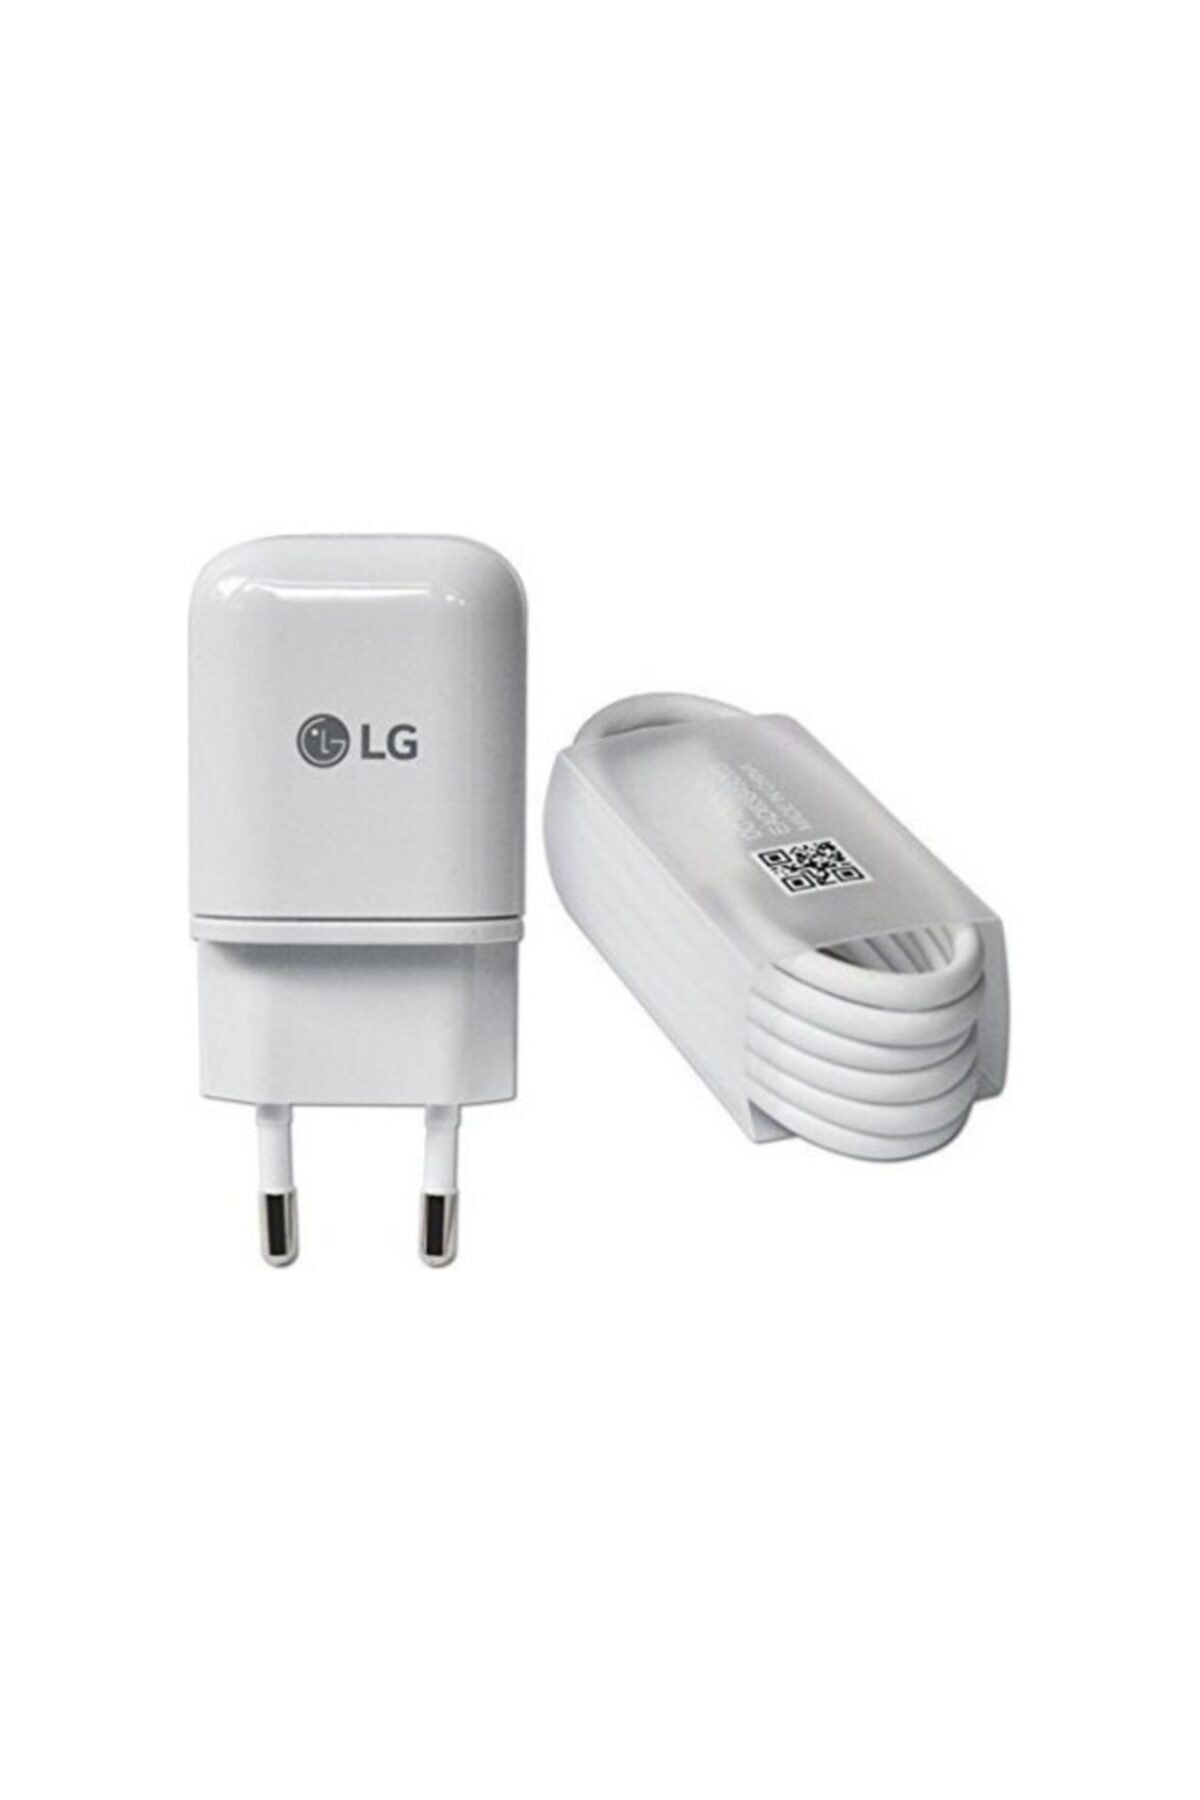 LG G5 Şarj Adaptörü Hızlı Şarj Cihazı Ve Usb Type C Kablo